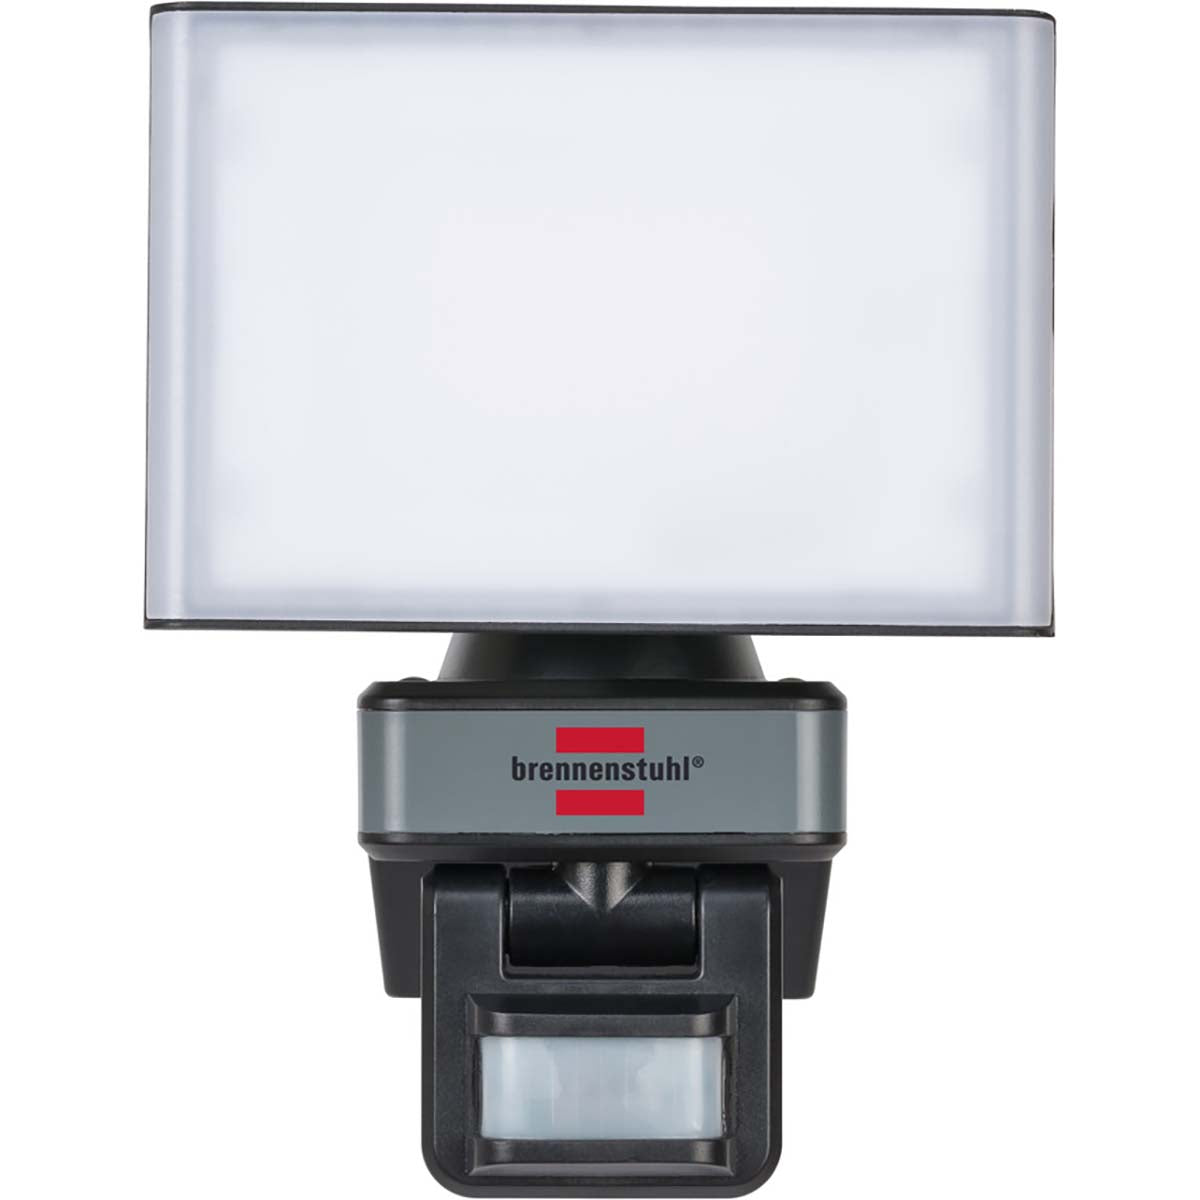 Connect WIFI LED Strahler mit Bewegungsmelder WF 2050 P / LED Sicherheitsleuchte 20W steuerbar per kostenloser App